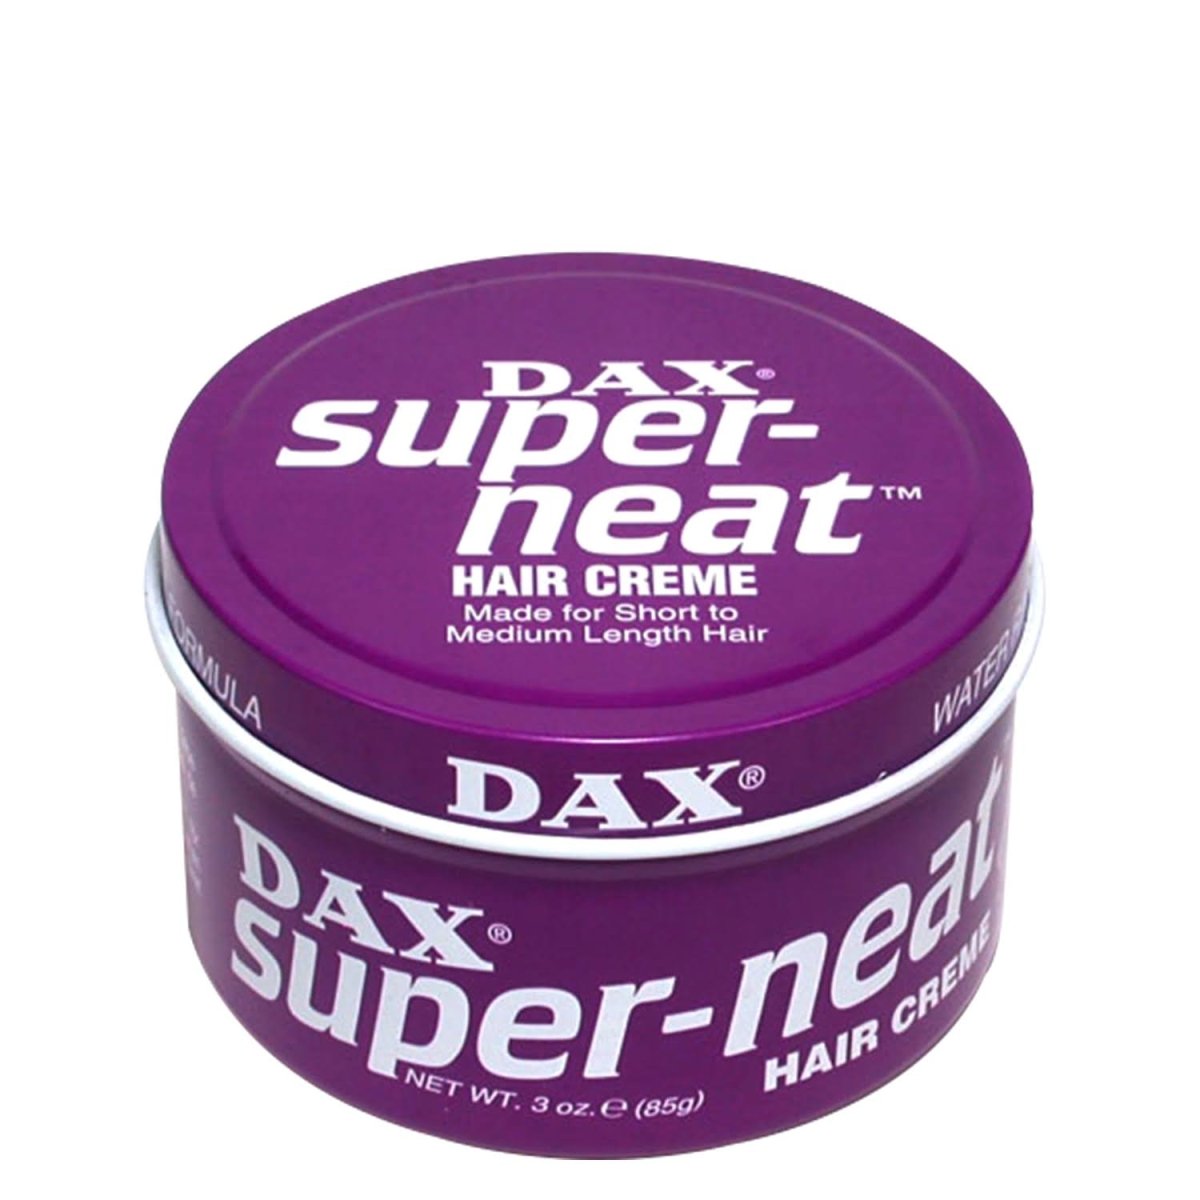 DAX Super-Neat - Southwestsix Cosmetics DAX Super-Neat Hair Creme DAX Southwestsix Cosmetics 077315000049 DAX Super-Neat